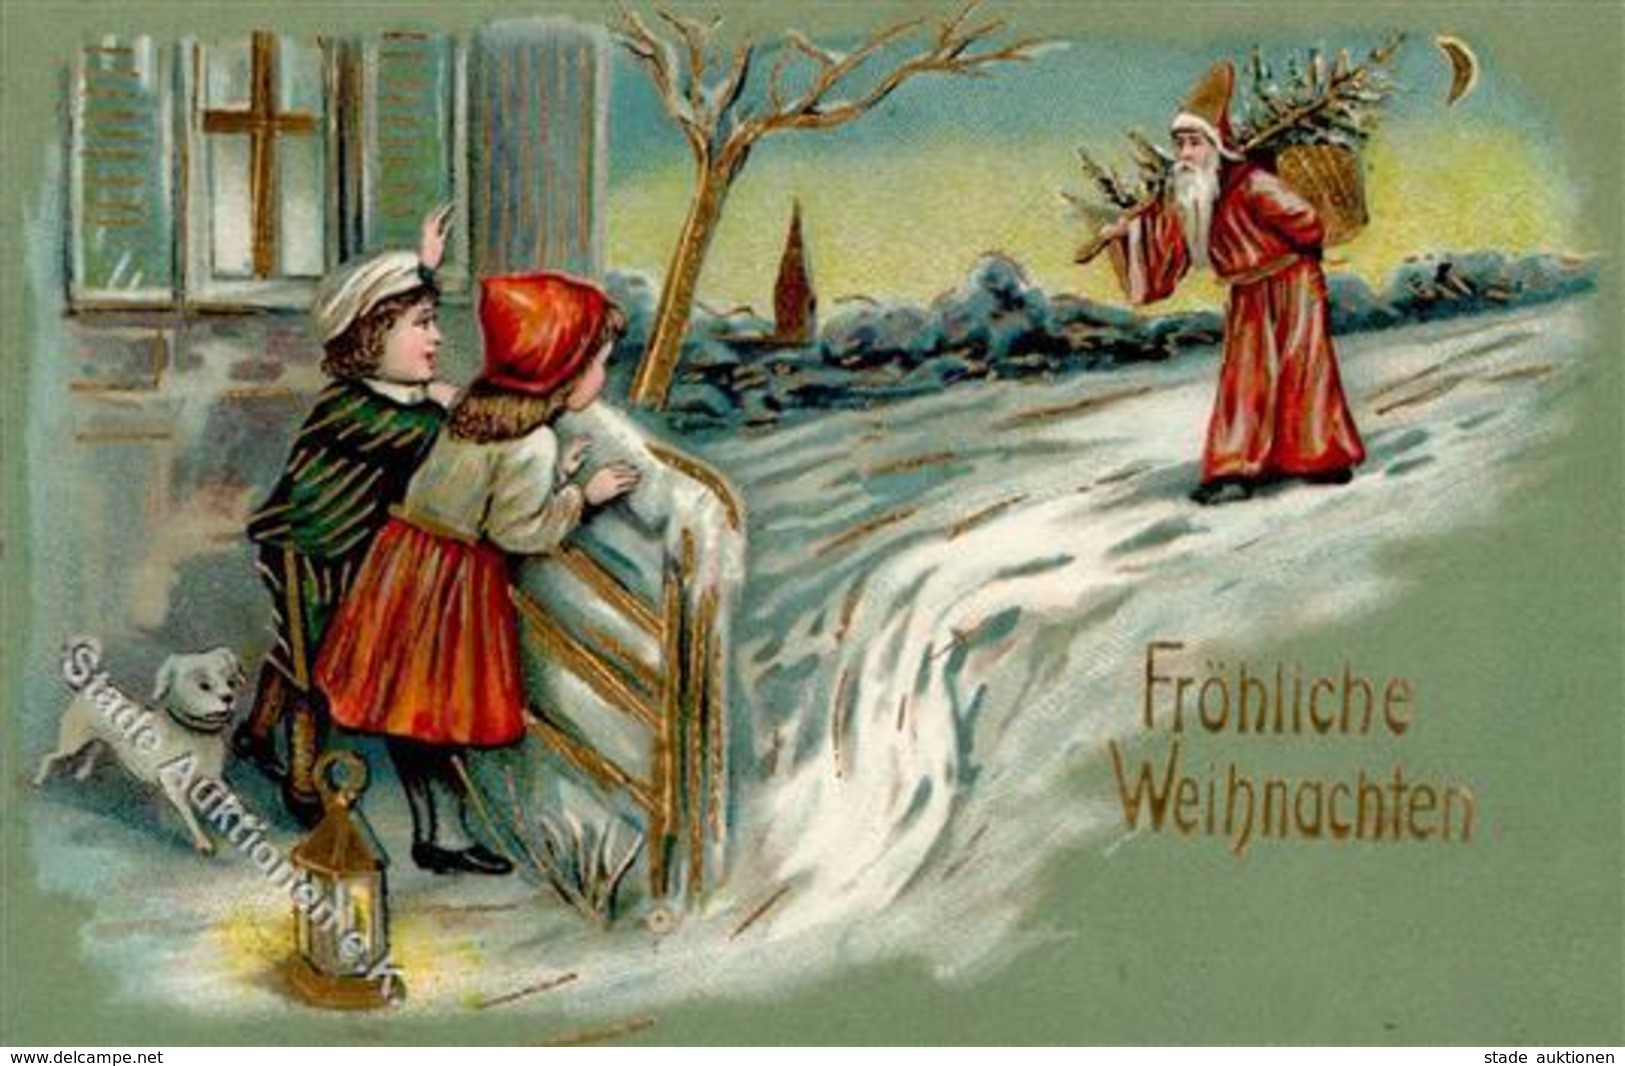 WEIHNACHTSMANN - Prägelitho Serie 9 I - Santa Claus